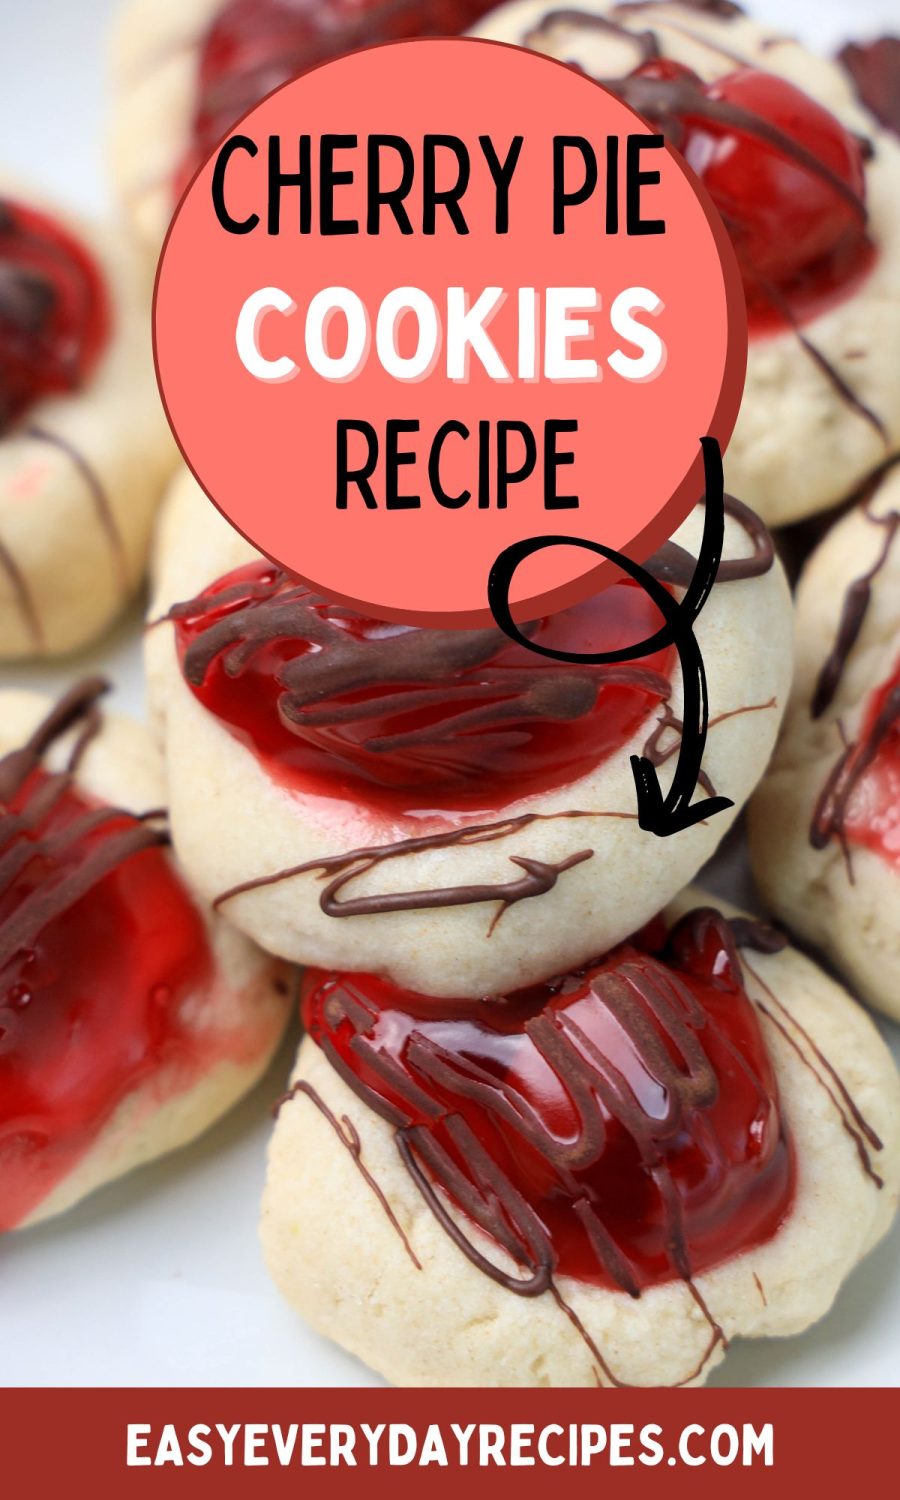 Cherry pie cookies recipe.